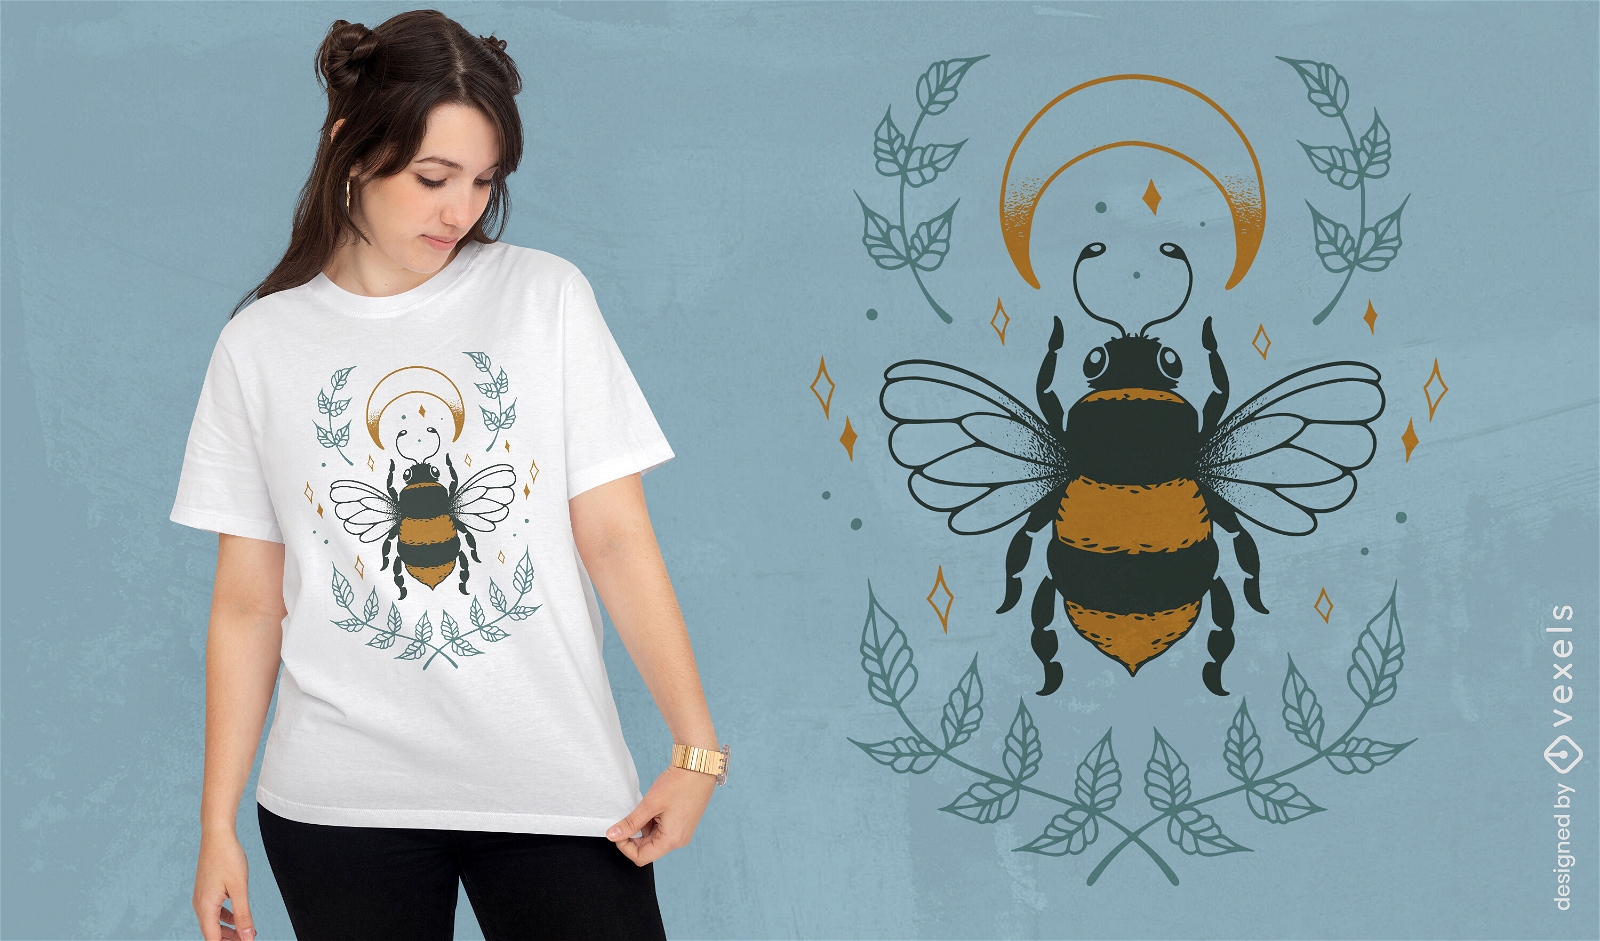 Dise?o de camiseta de abeja animal y luna.